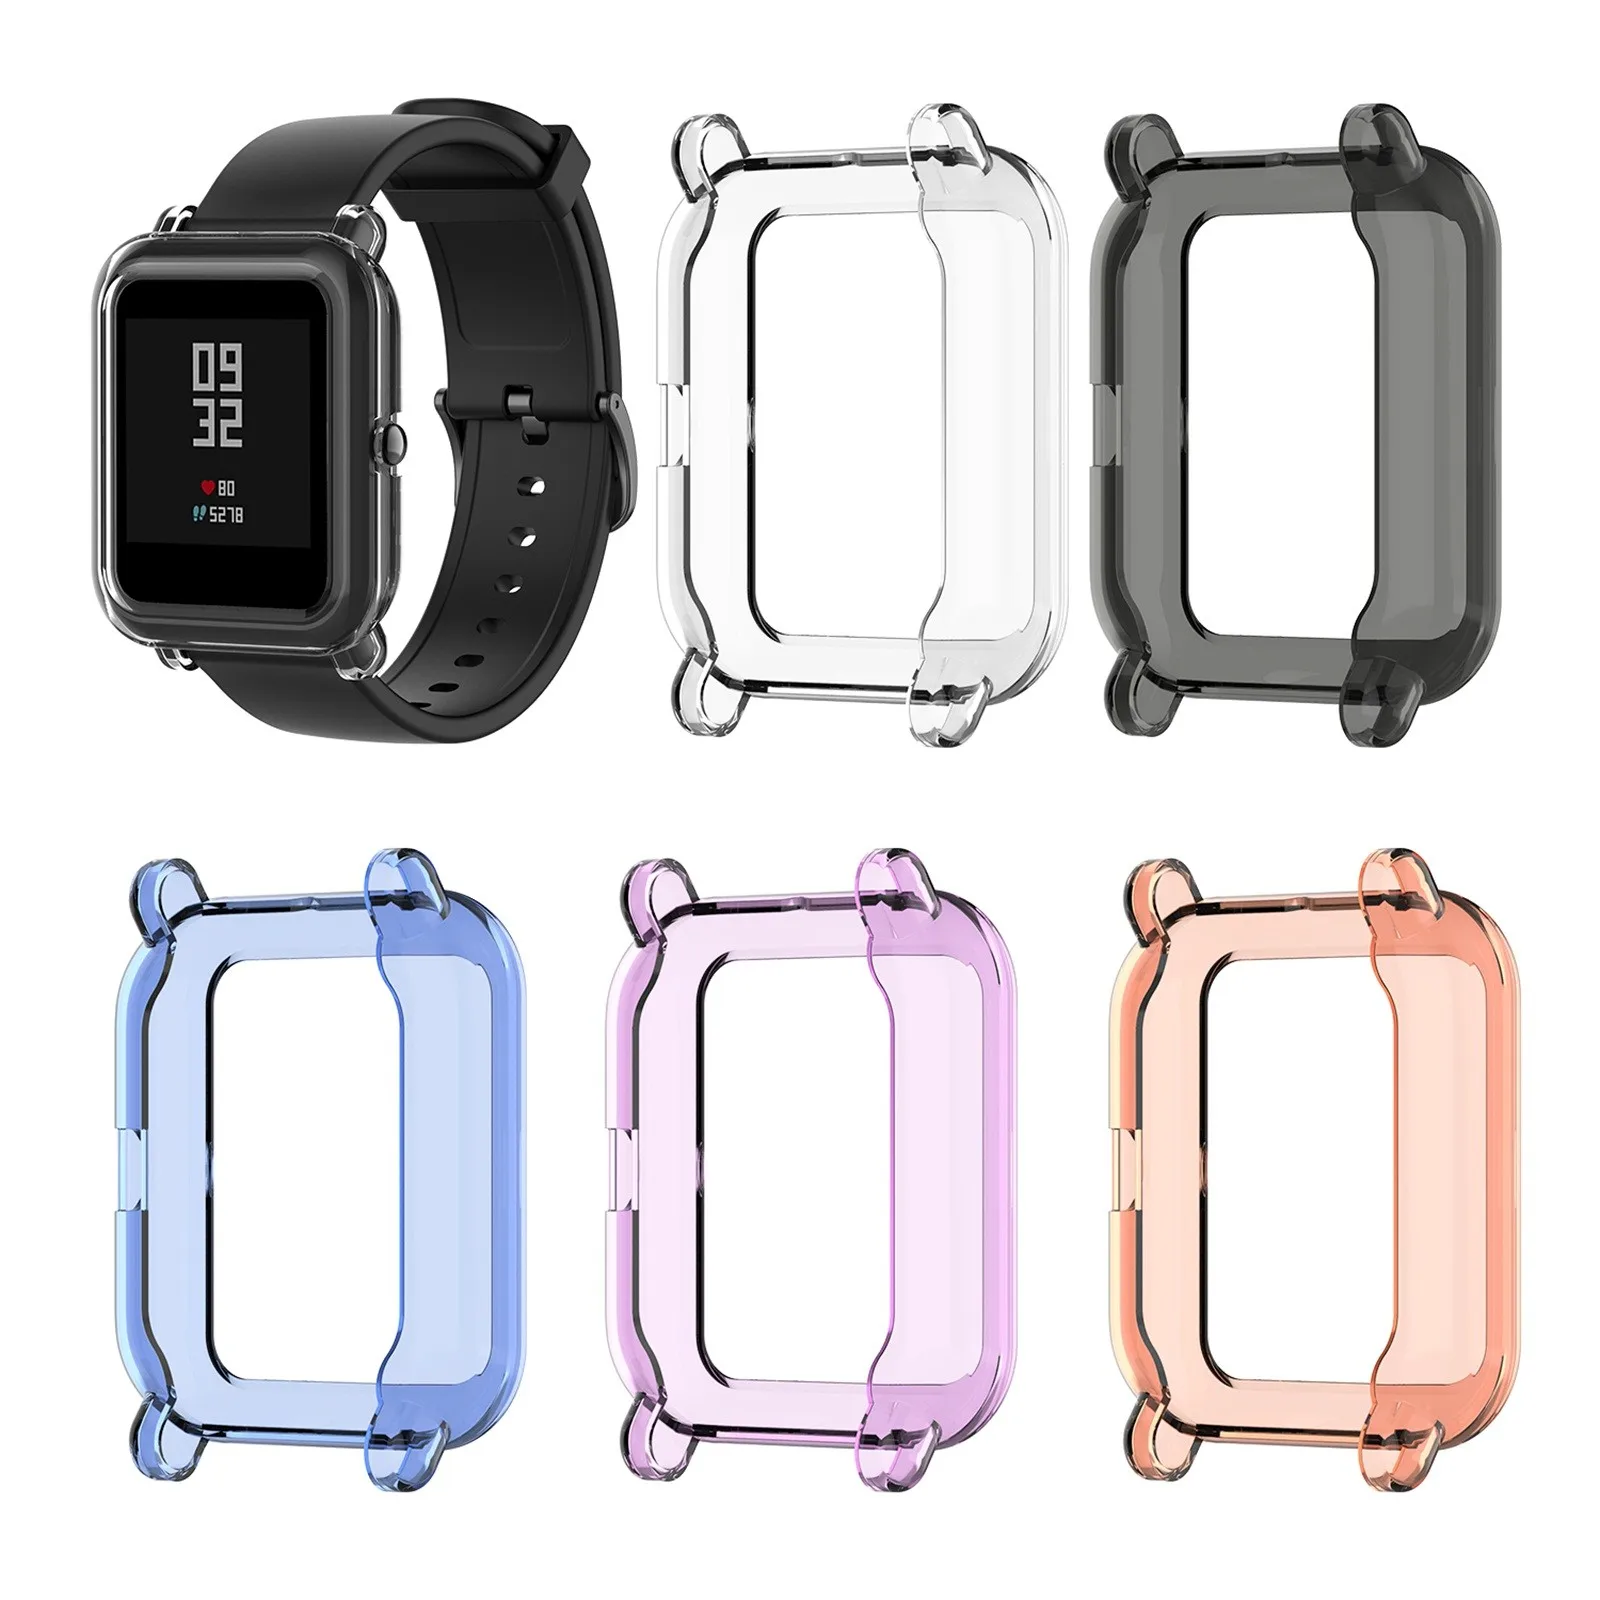 

Мягкий прозрачный защитный силиконовый чехол из ТПУ для Amazfit GTS2 Mini Watch, сменные цветные аксессуары для смарт-часов